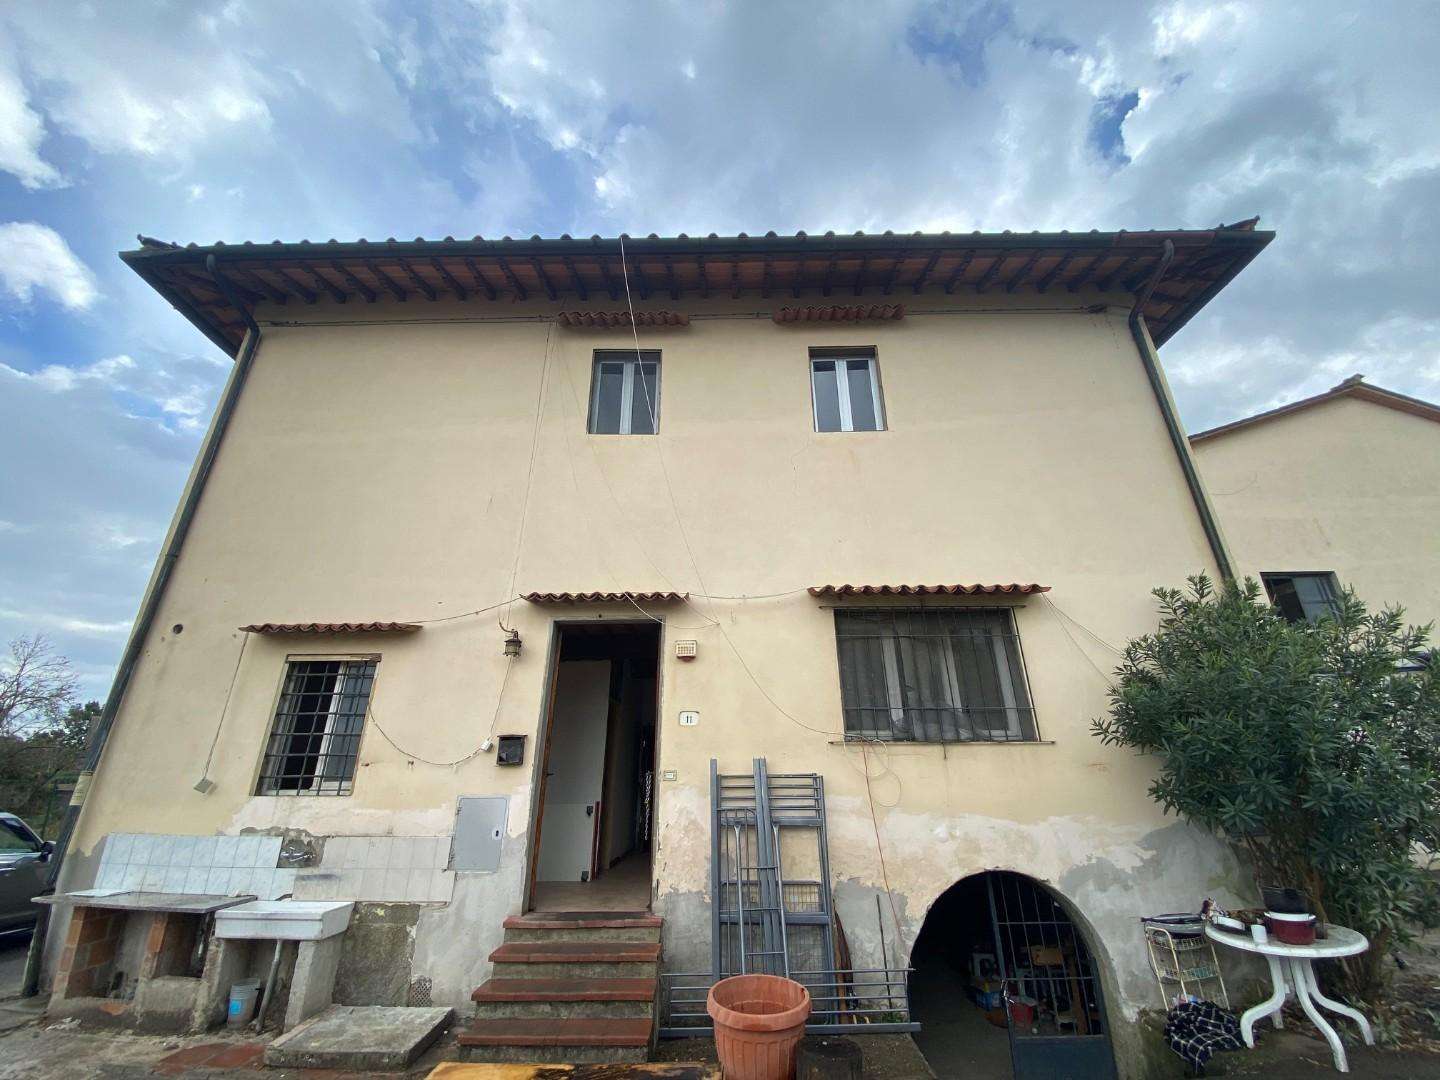 Palazzo - Stabile in Vendita a Poggio a Caiano Via Vittorio Emanuele II, 34